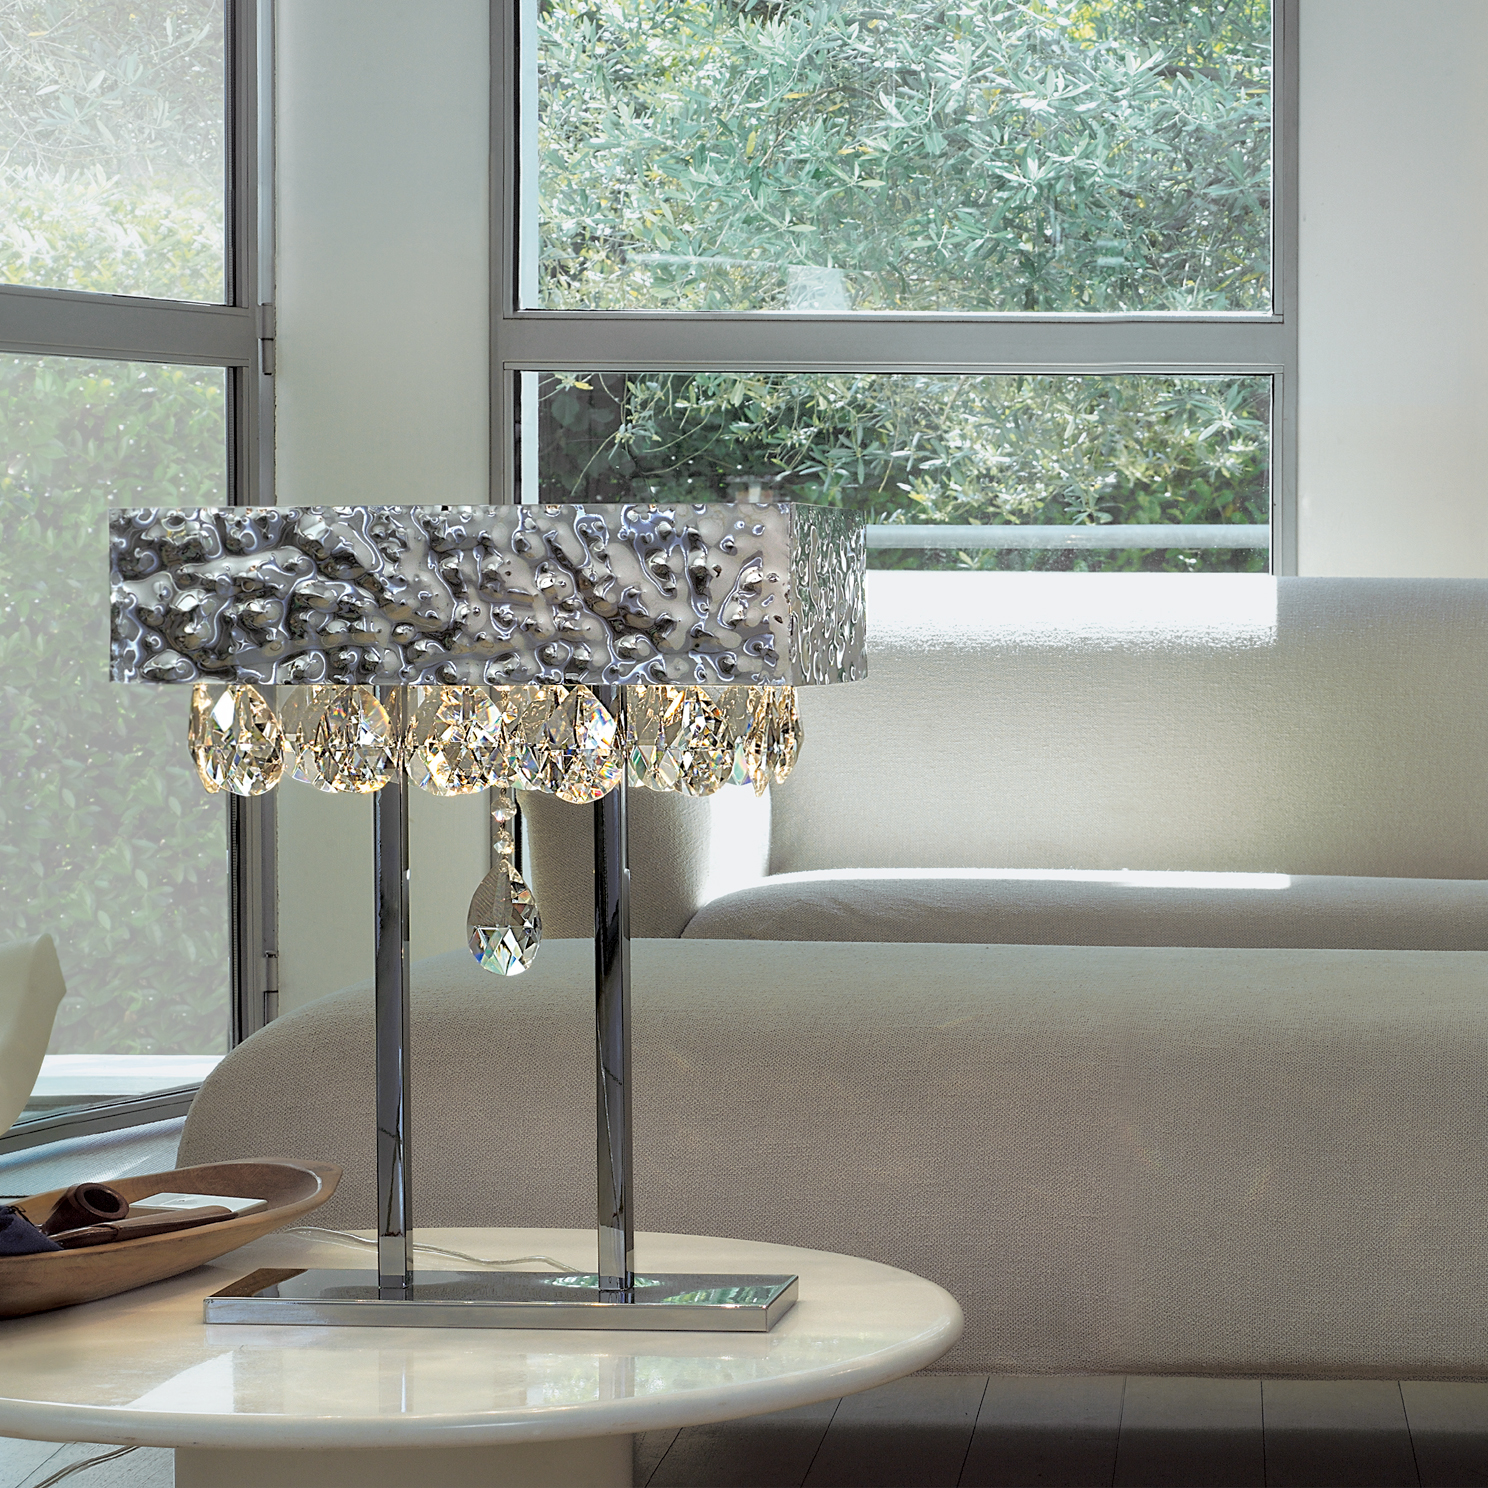 Lampada da tavolo con gocce in cristallo - Modello Magma 450-L